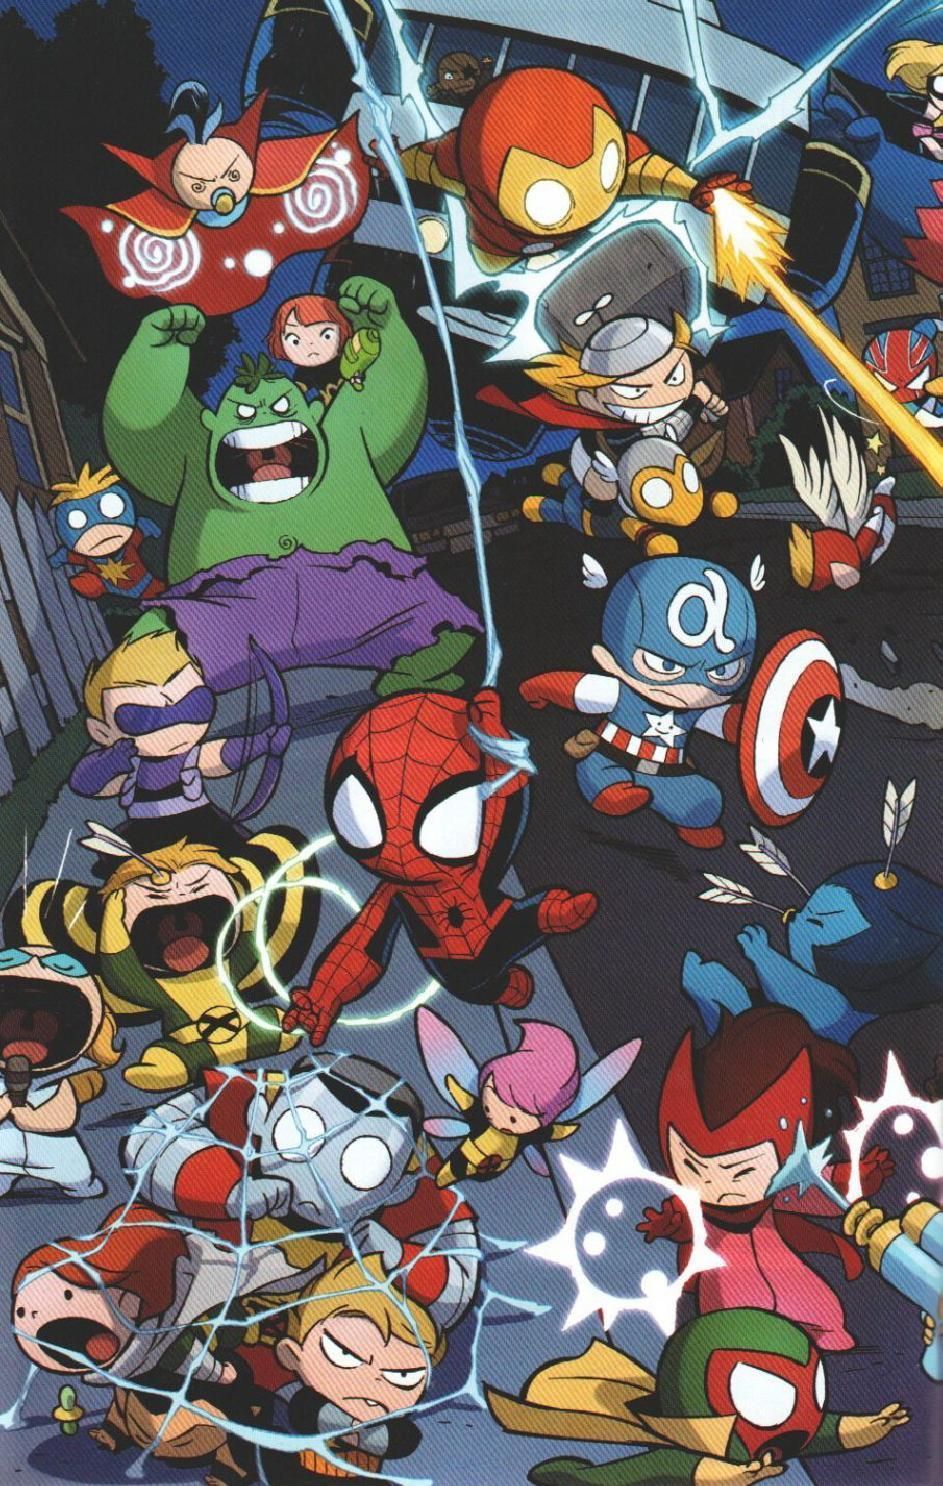 Vvsx 40 vs 6 [por spiderman2099][crg]. Avengers wallpaper, Marvel